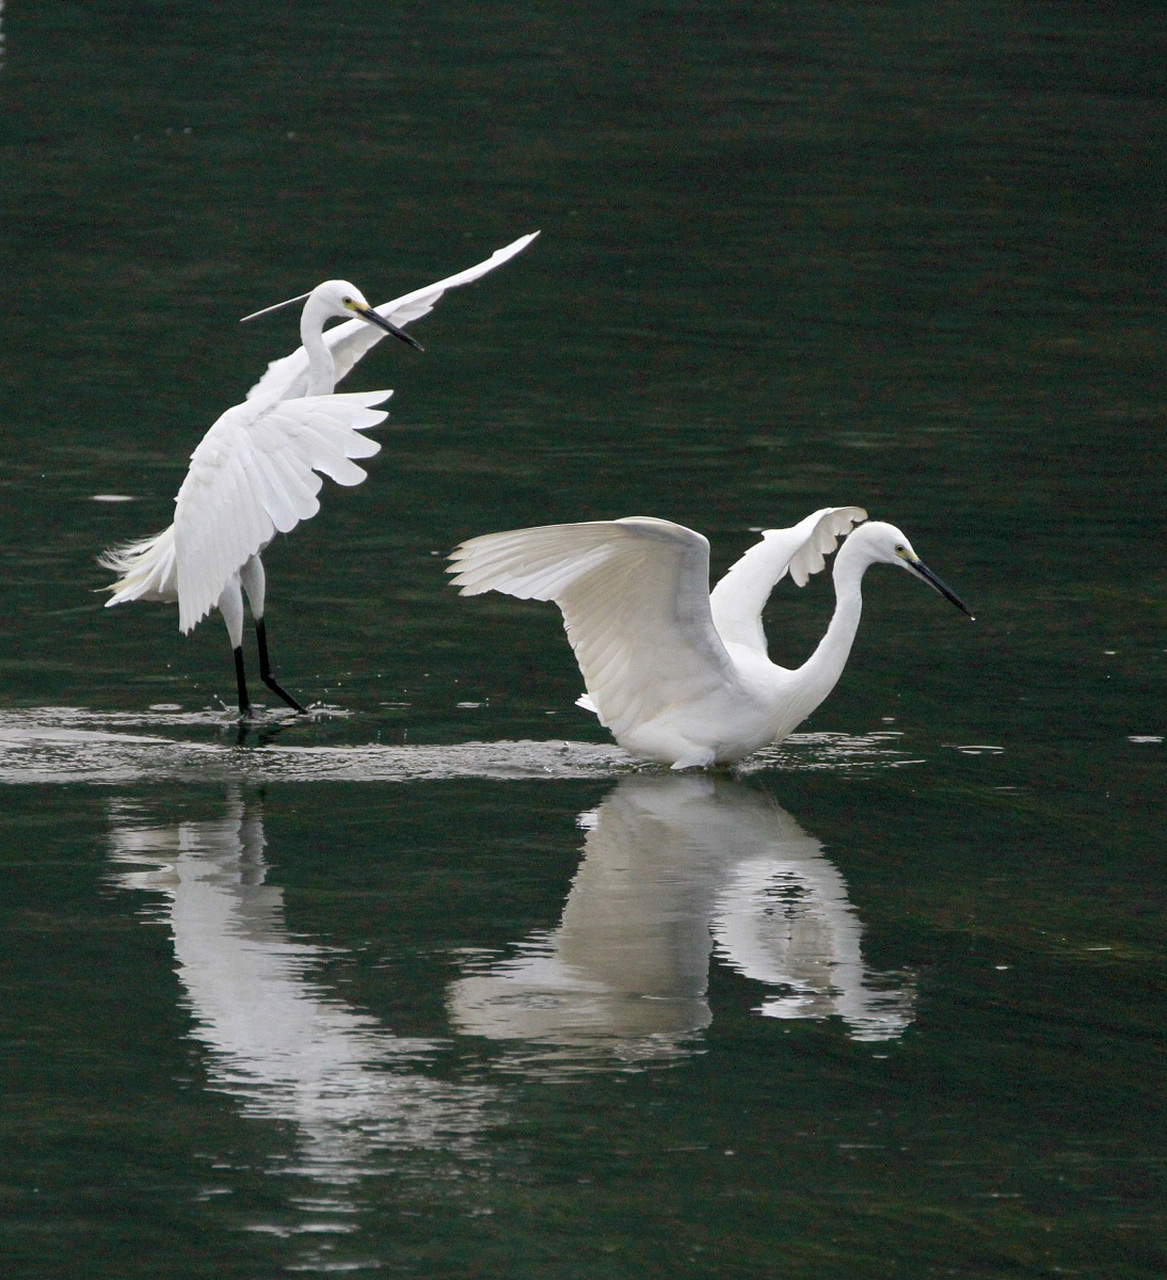 双宿双飞的白鹭夫妻,一起在湖面翩翩起舞,姿态优美